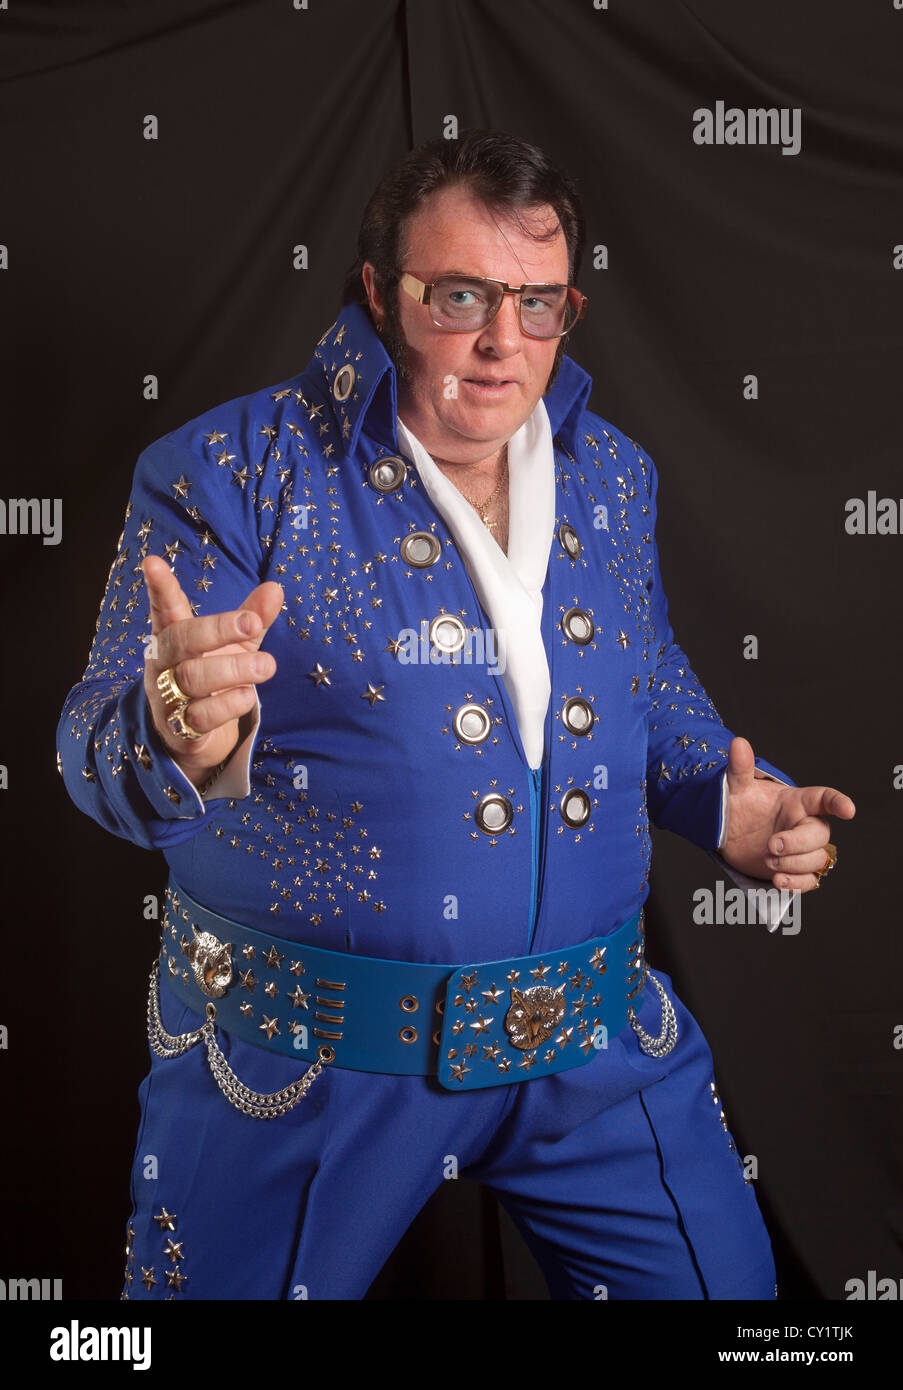  Elvis Presley Gi Blues Unisex Adult Sublimated Costume